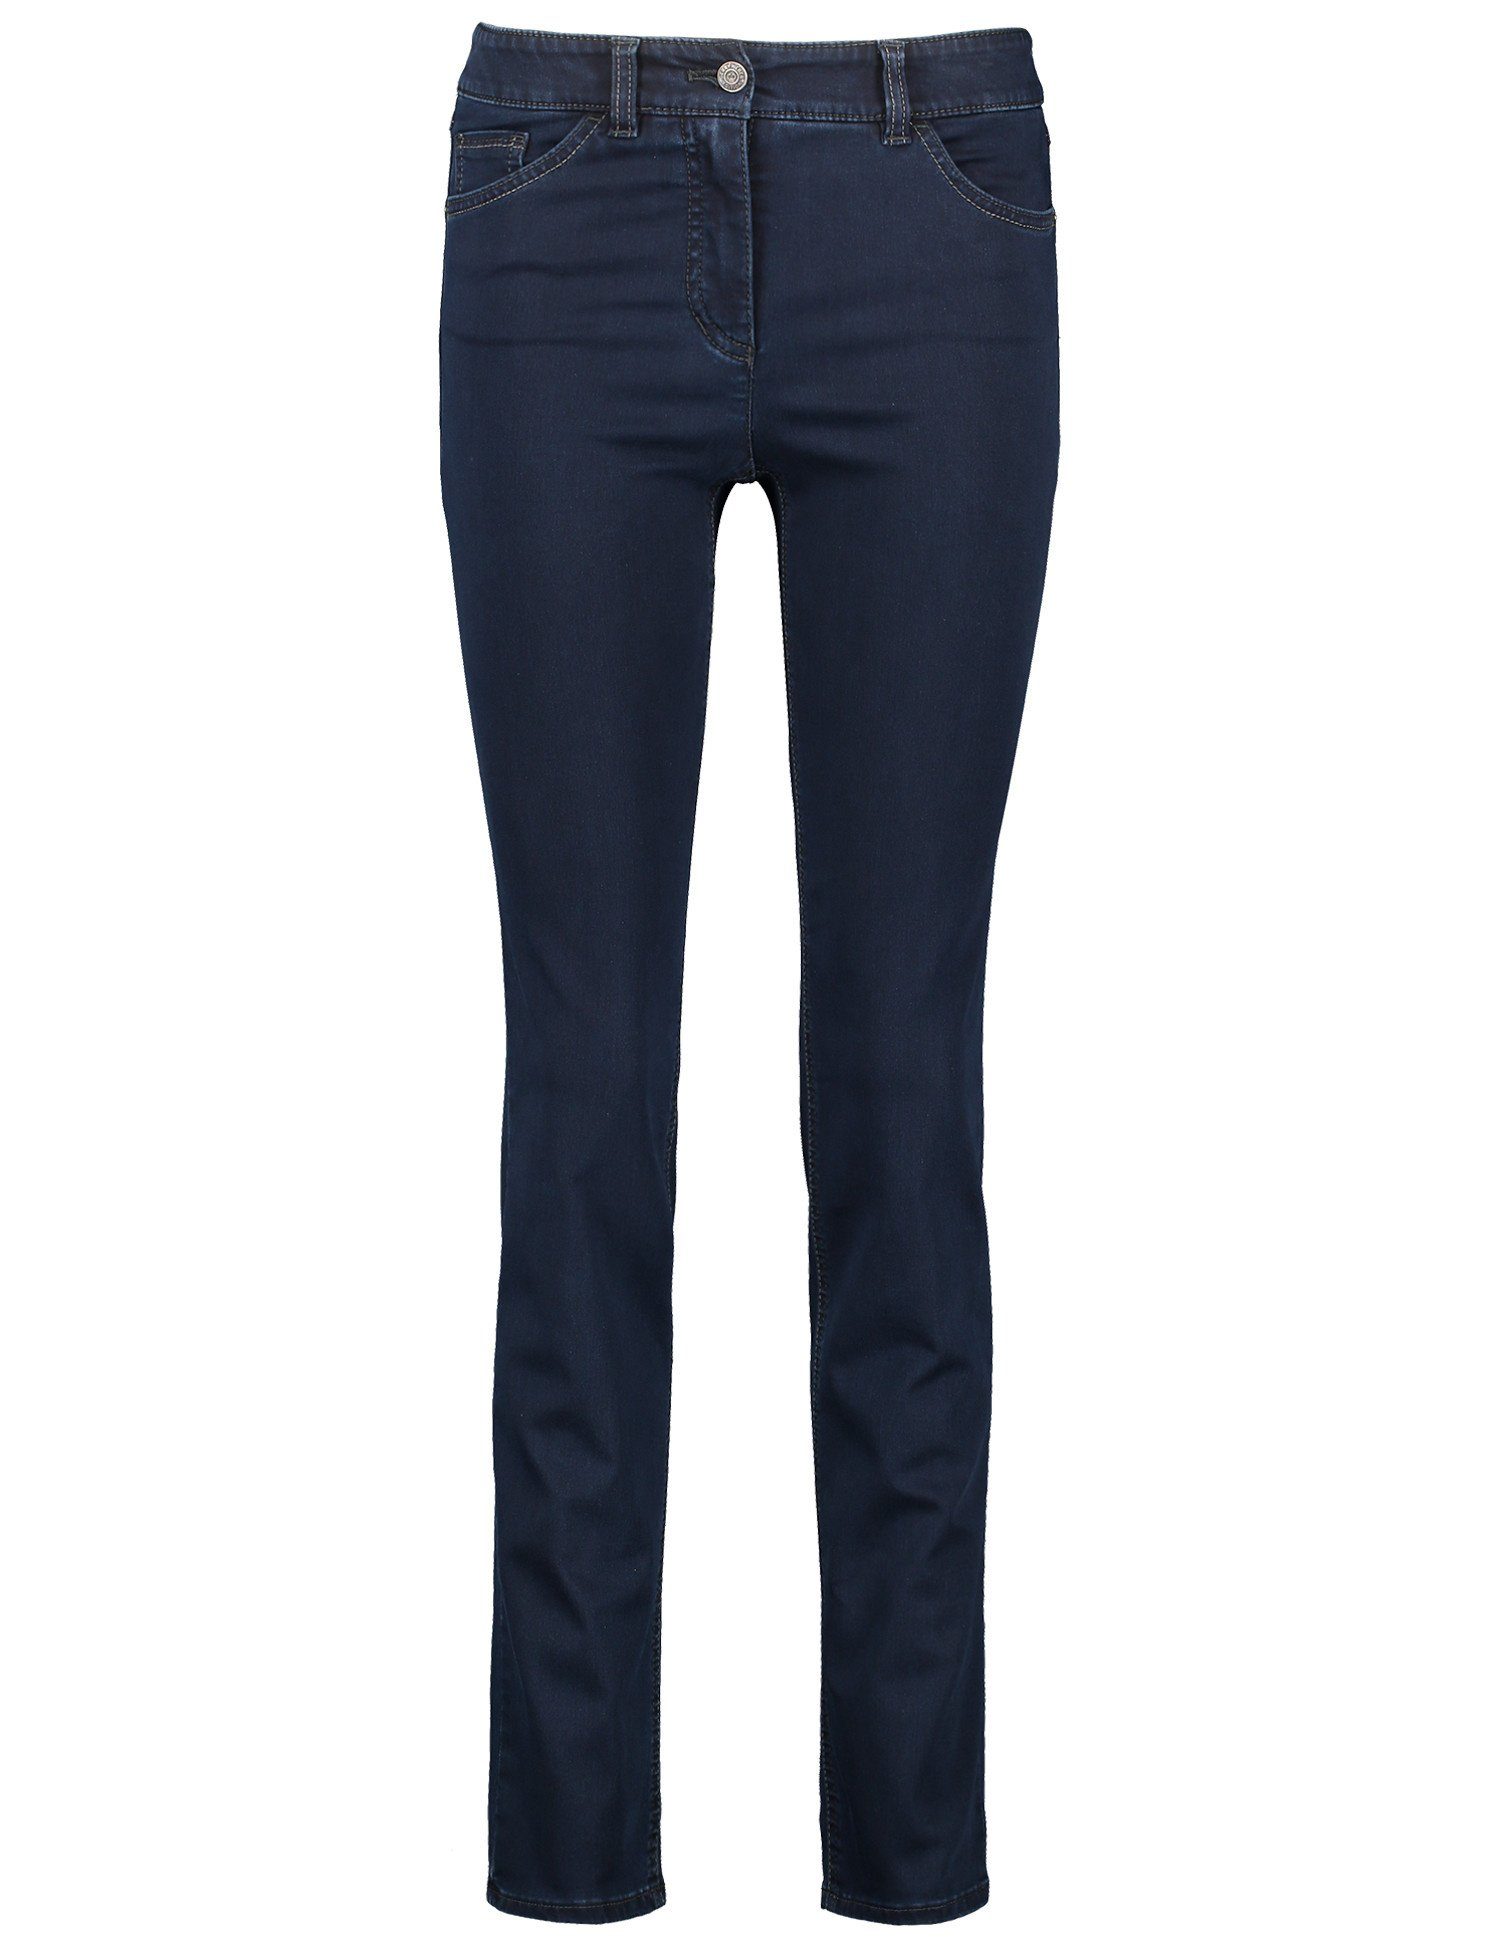 GERRY WEBER Slim-fit-Jeans 5-pocket Jeans Slimfit dark blue denim